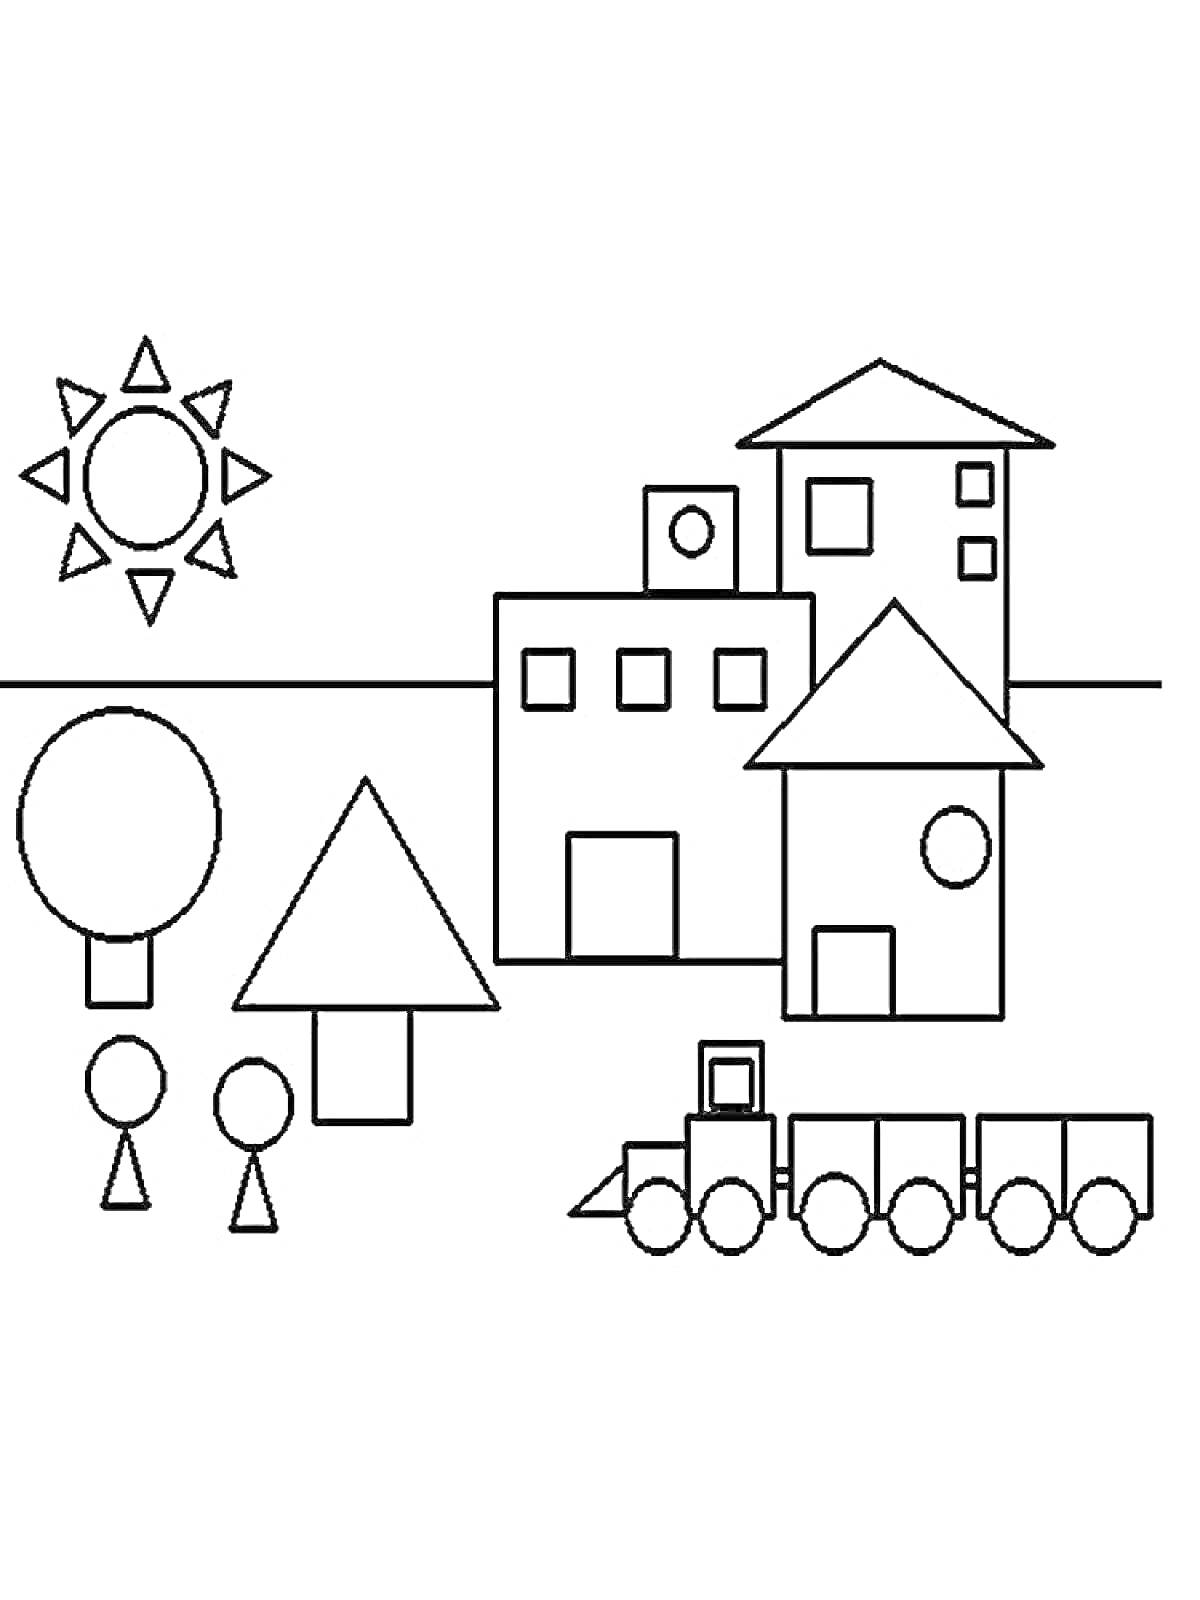 На раскраске изображено: Дом, Человек, Поезд, Солнце, Геометрические фигуры, Деревья, Квадраты, Круги, Прямоугольники, Треугольники